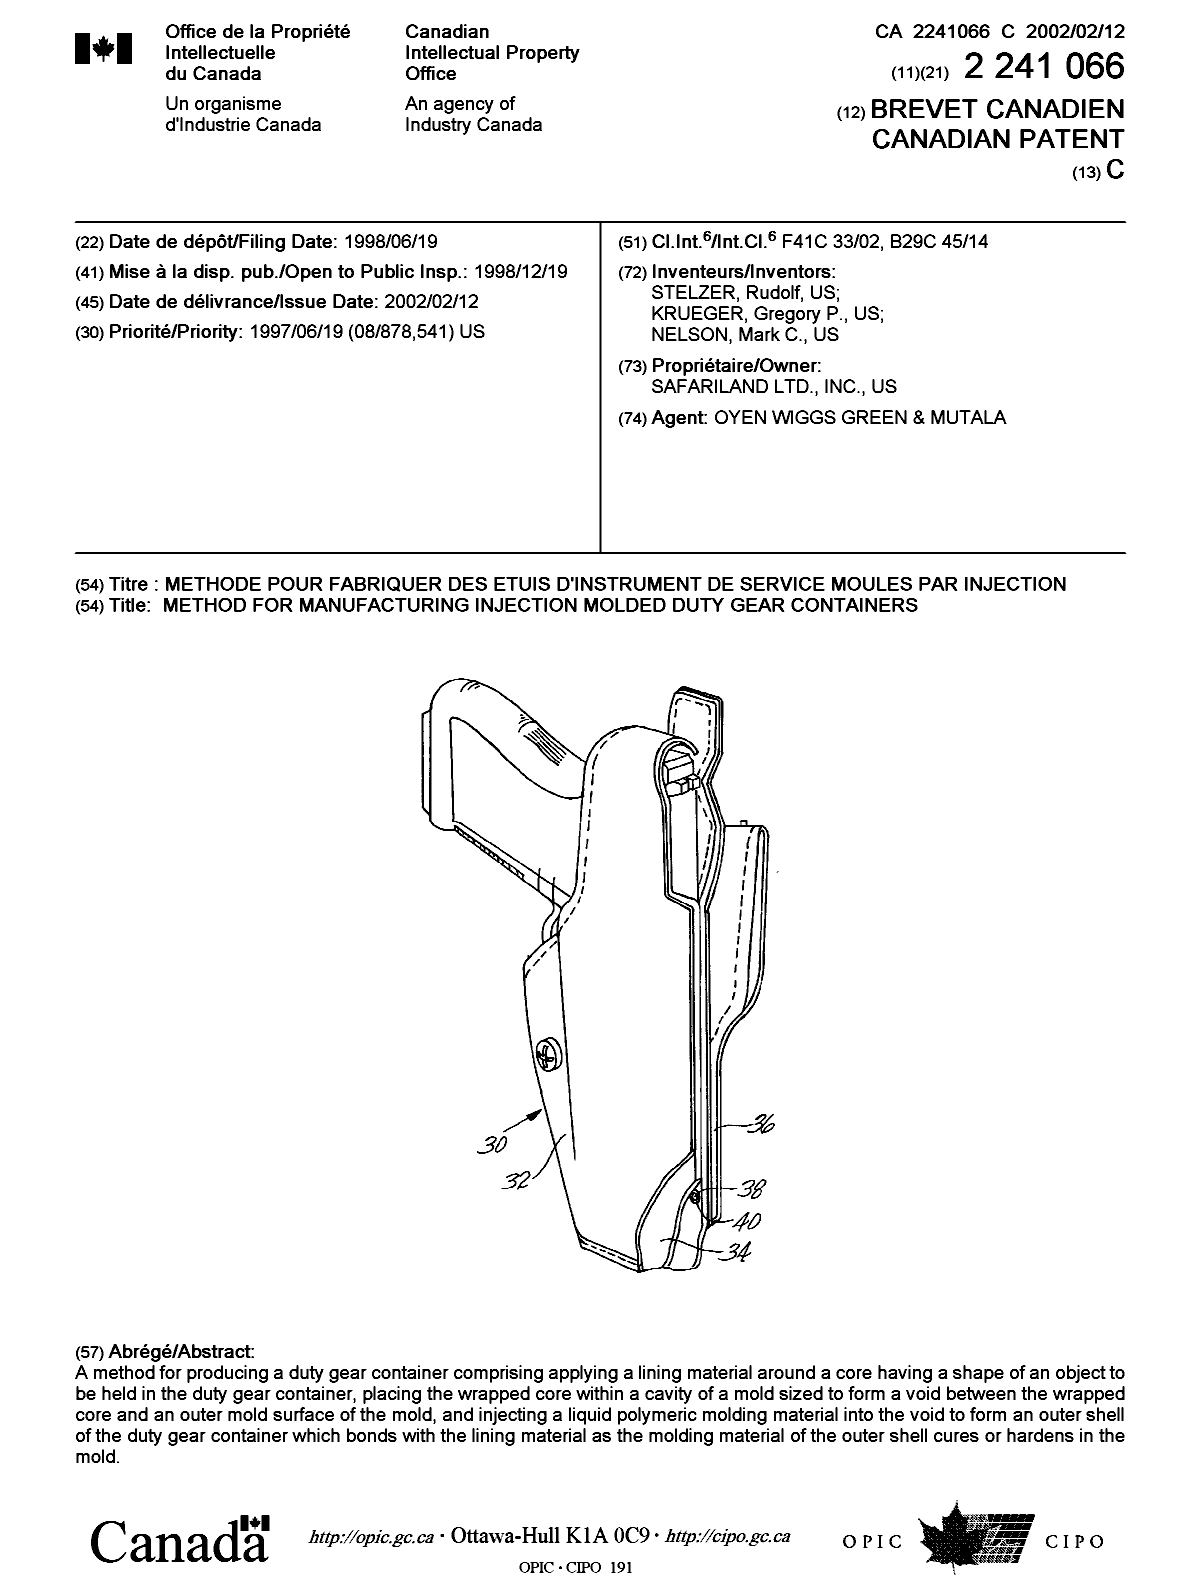 Document de brevet canadien 2241066. Page couverture 20020110. Image 1 de 1